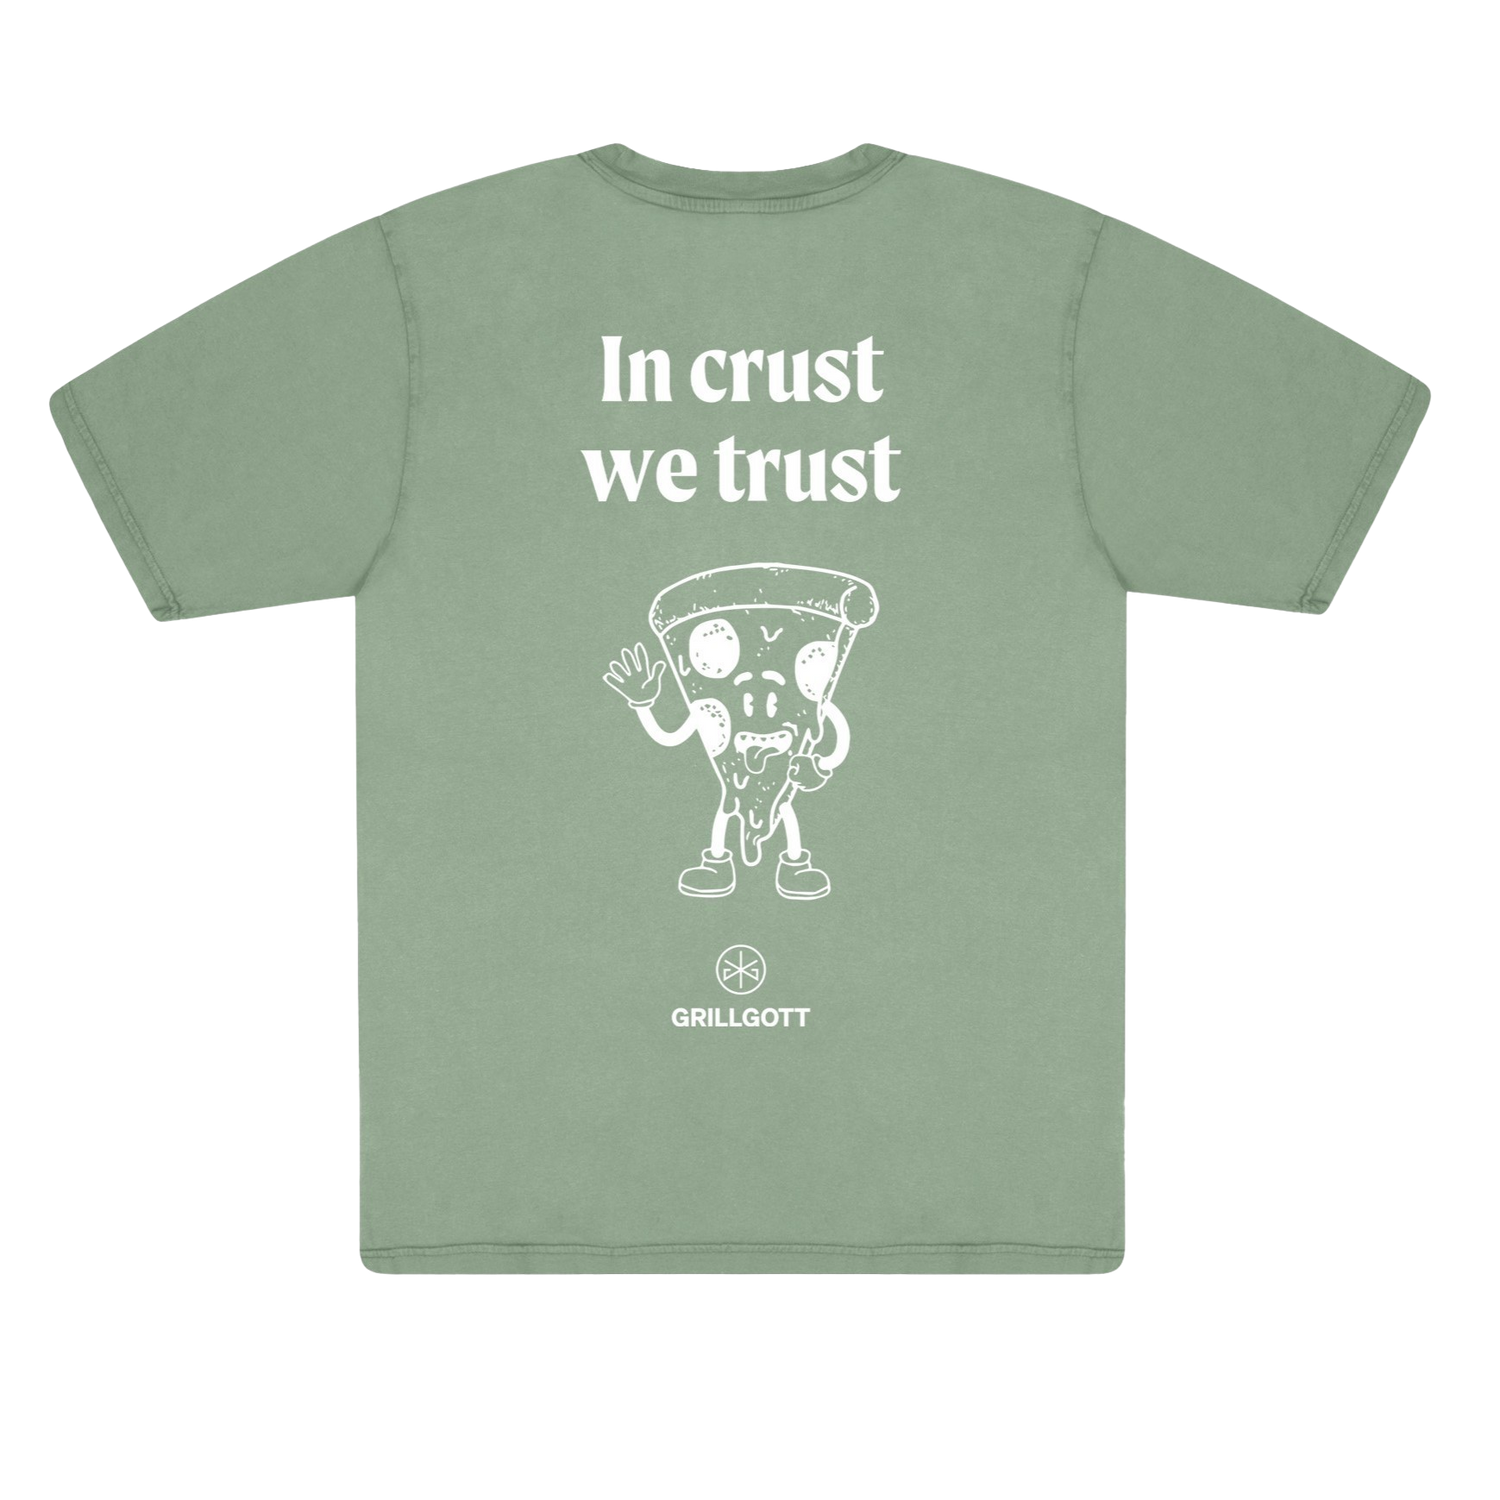 Grillgott T-Shirt XS "In crust we trust"